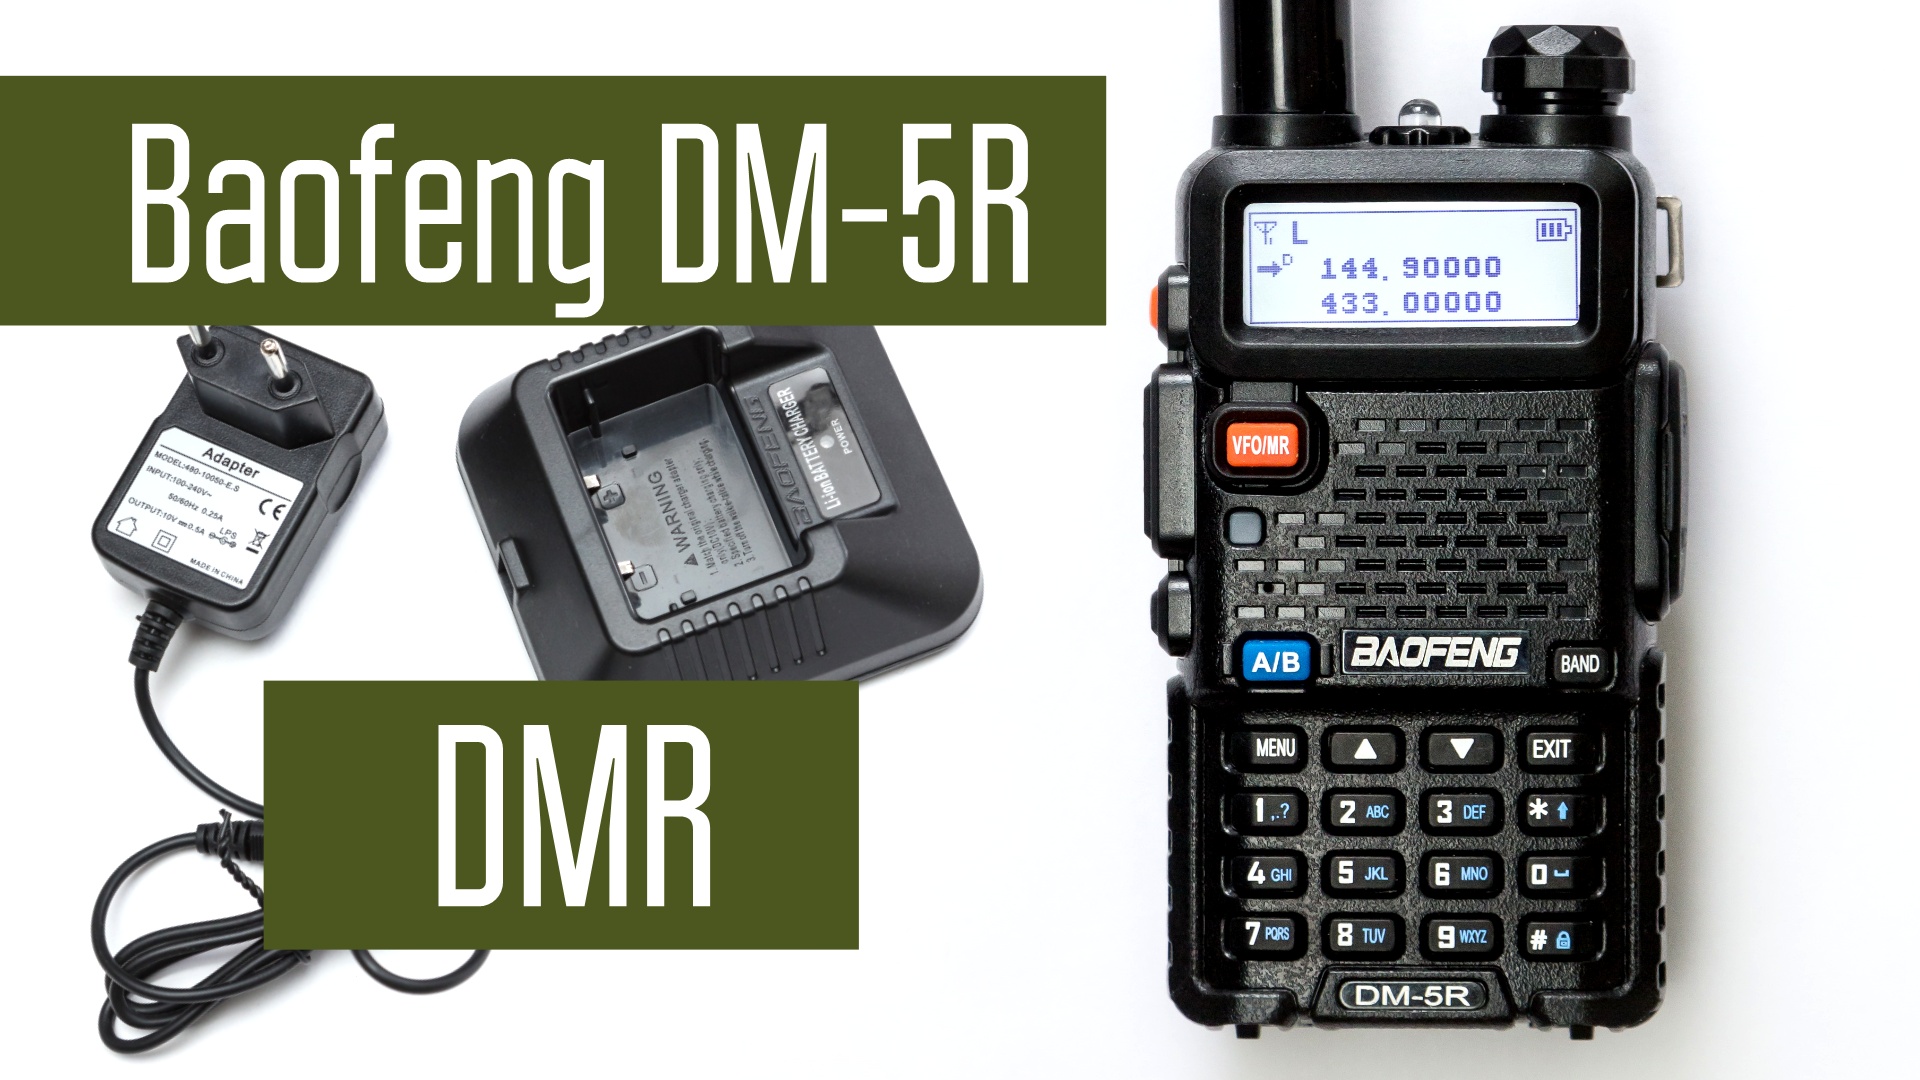 Baofeng DM-5R - самая дешевая DMR-станция. VHF+UHF Analog+DMR. Обзор, измерение мощности, вскрытие.